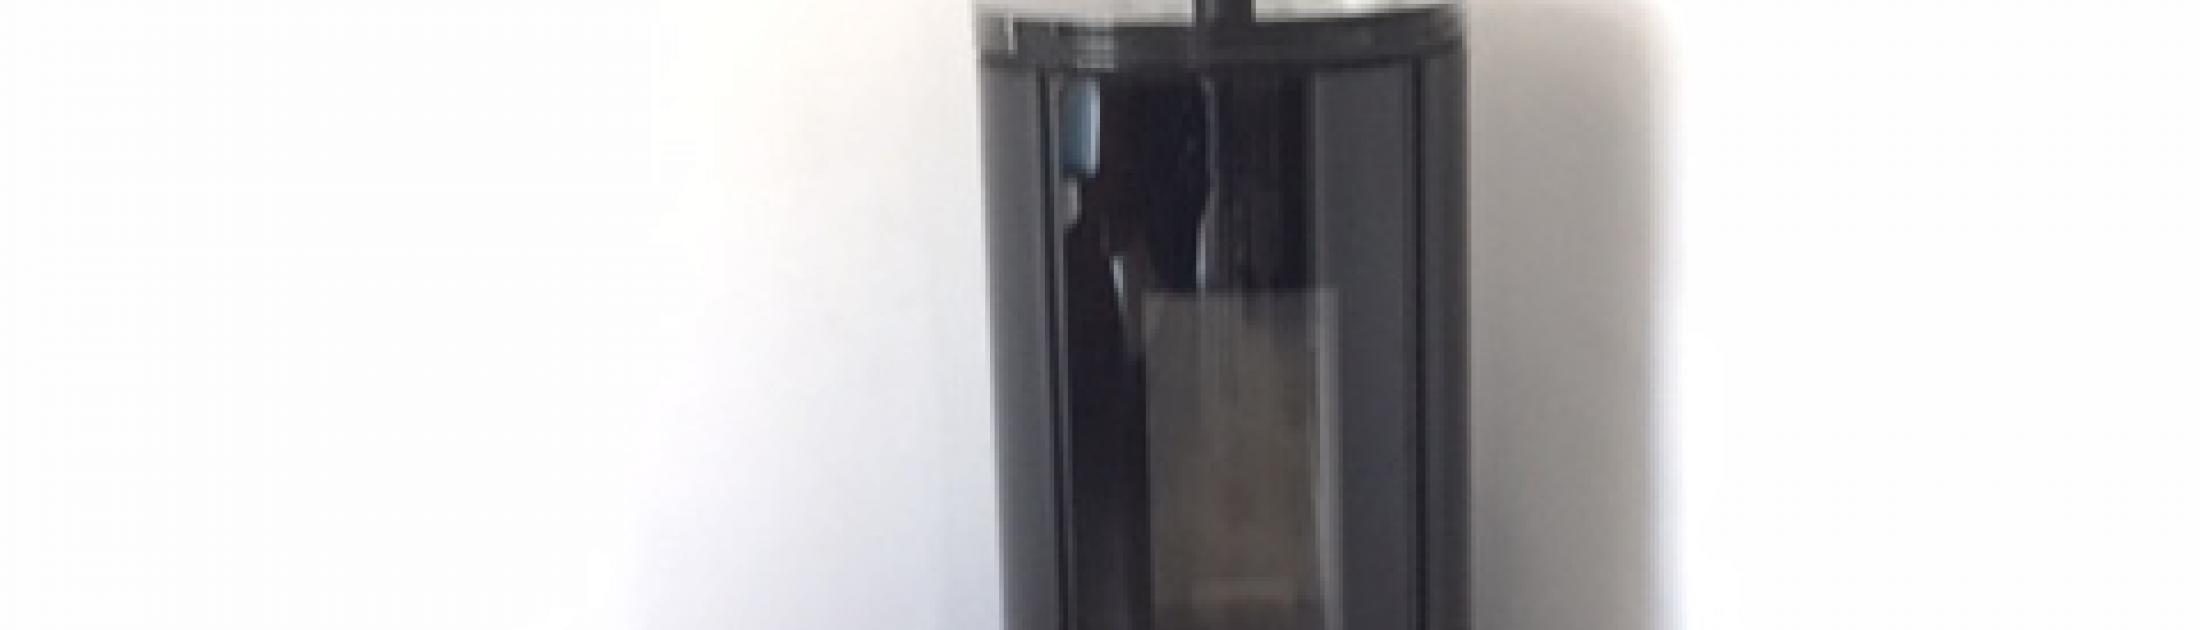 Mise en place d'un poêle à granulés FUSION GLASS de la marque SKIA DESIGN à GEMENOS